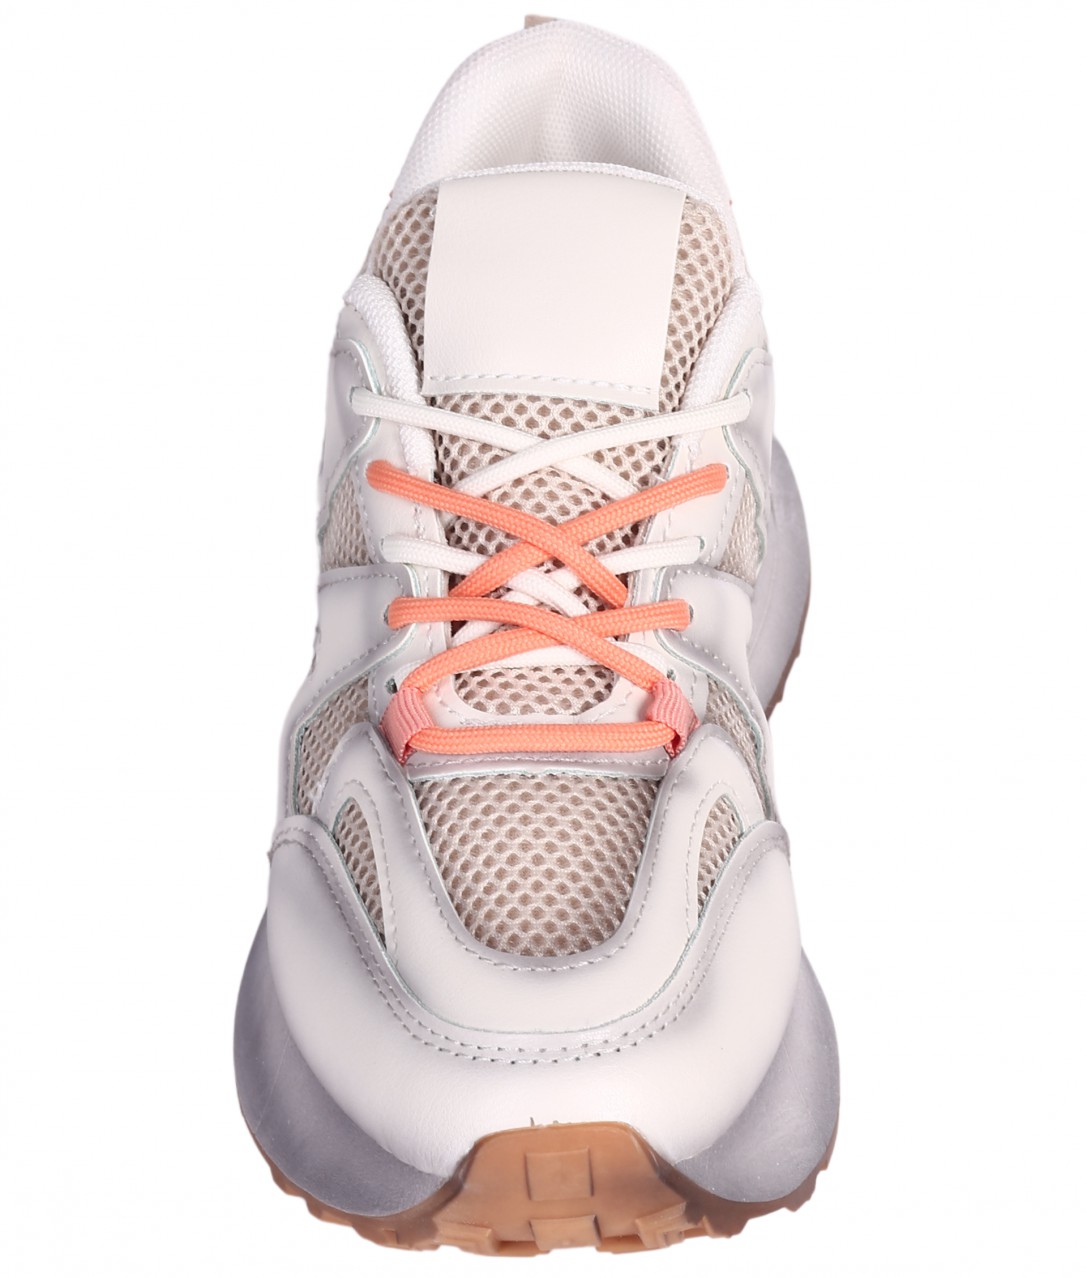 Eжедневни дамски обувки е бежов/оранжев цвят 3U-24002 beige/orange